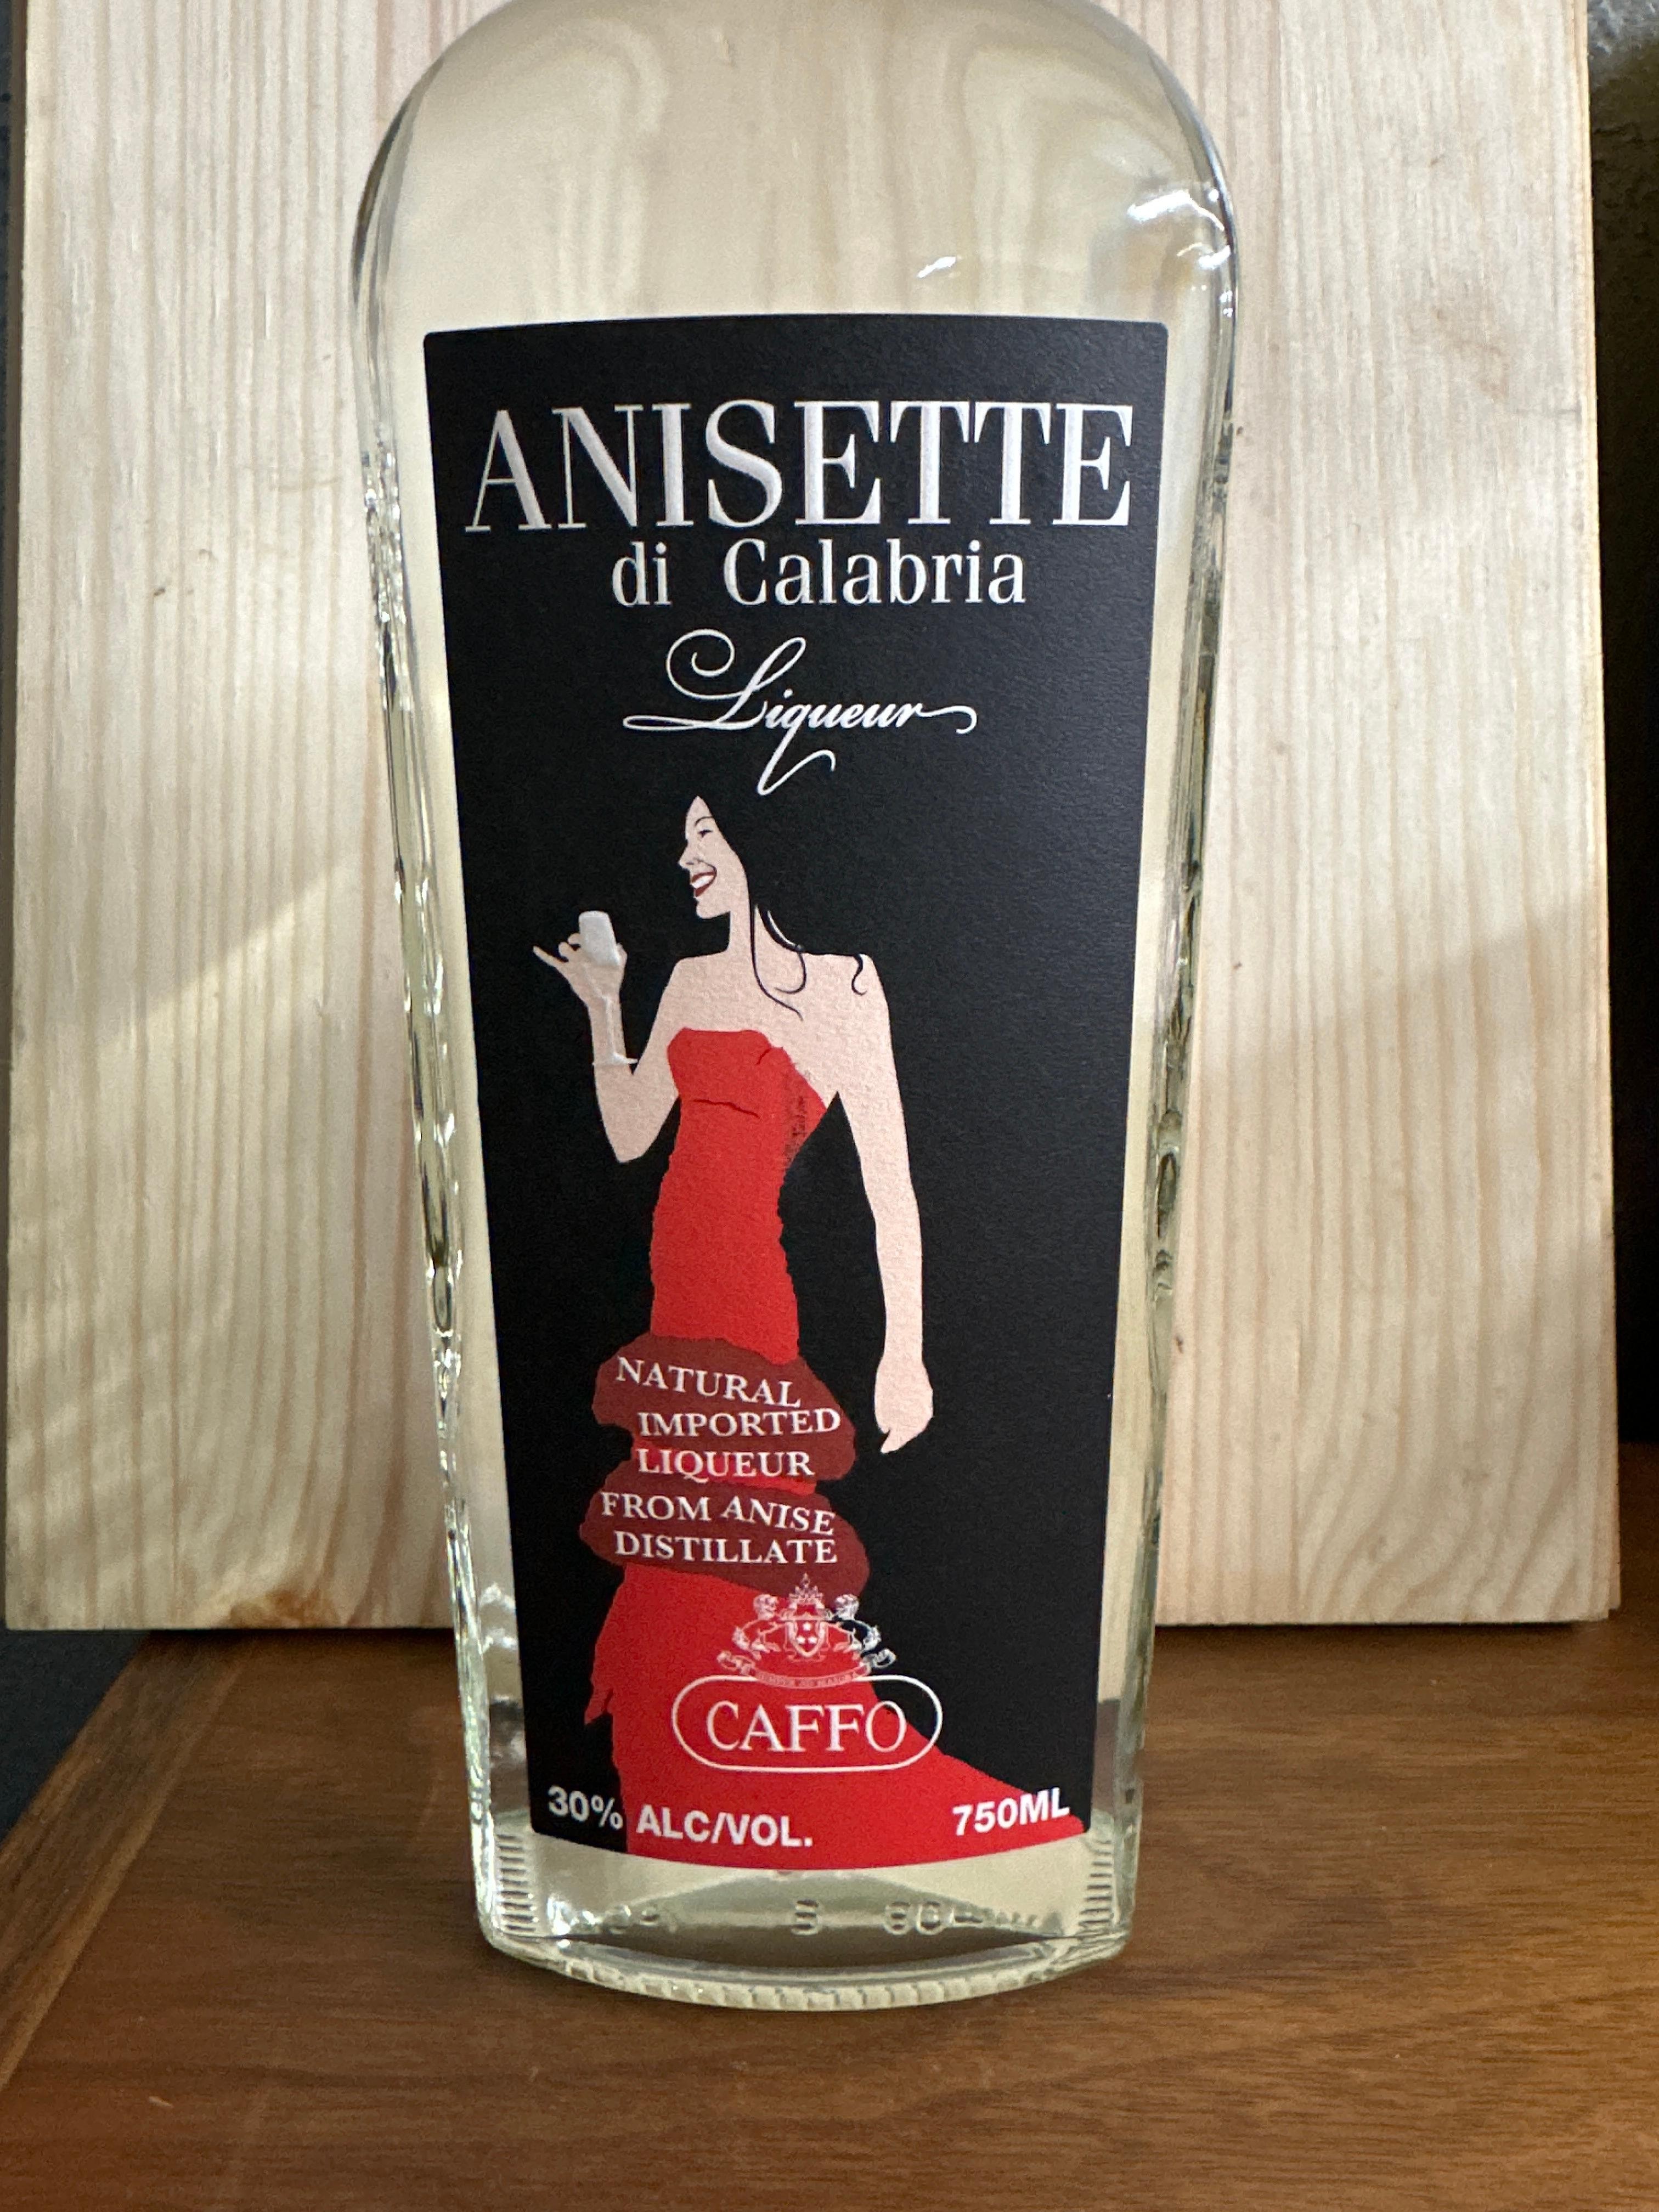 Anisette di Calabria